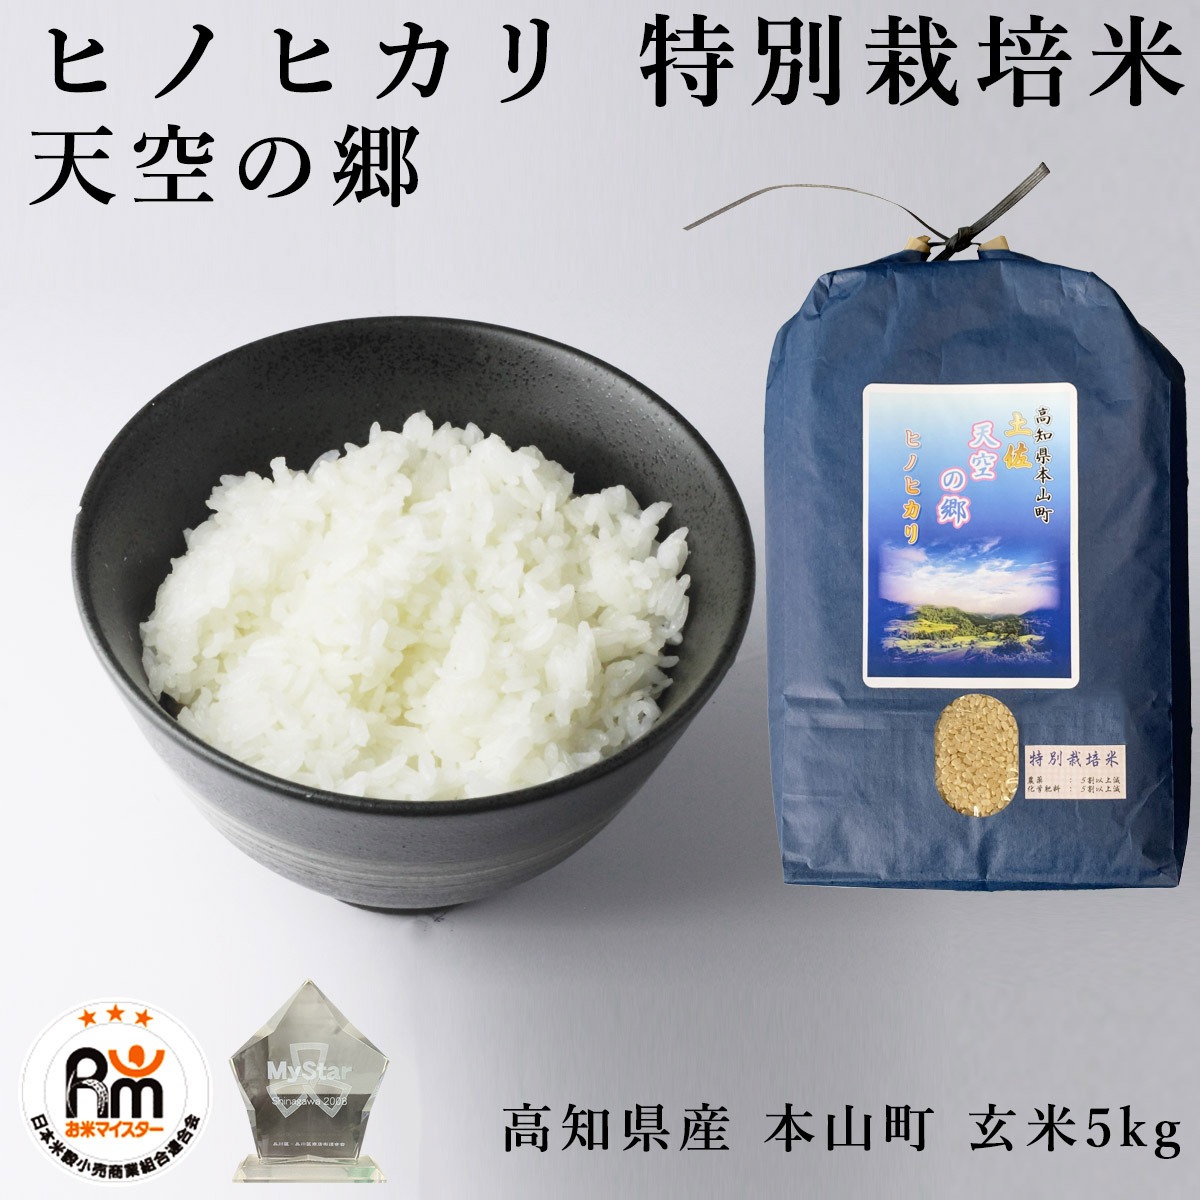 高知県産ヒノヒカリ - 米・雑穀・粉類